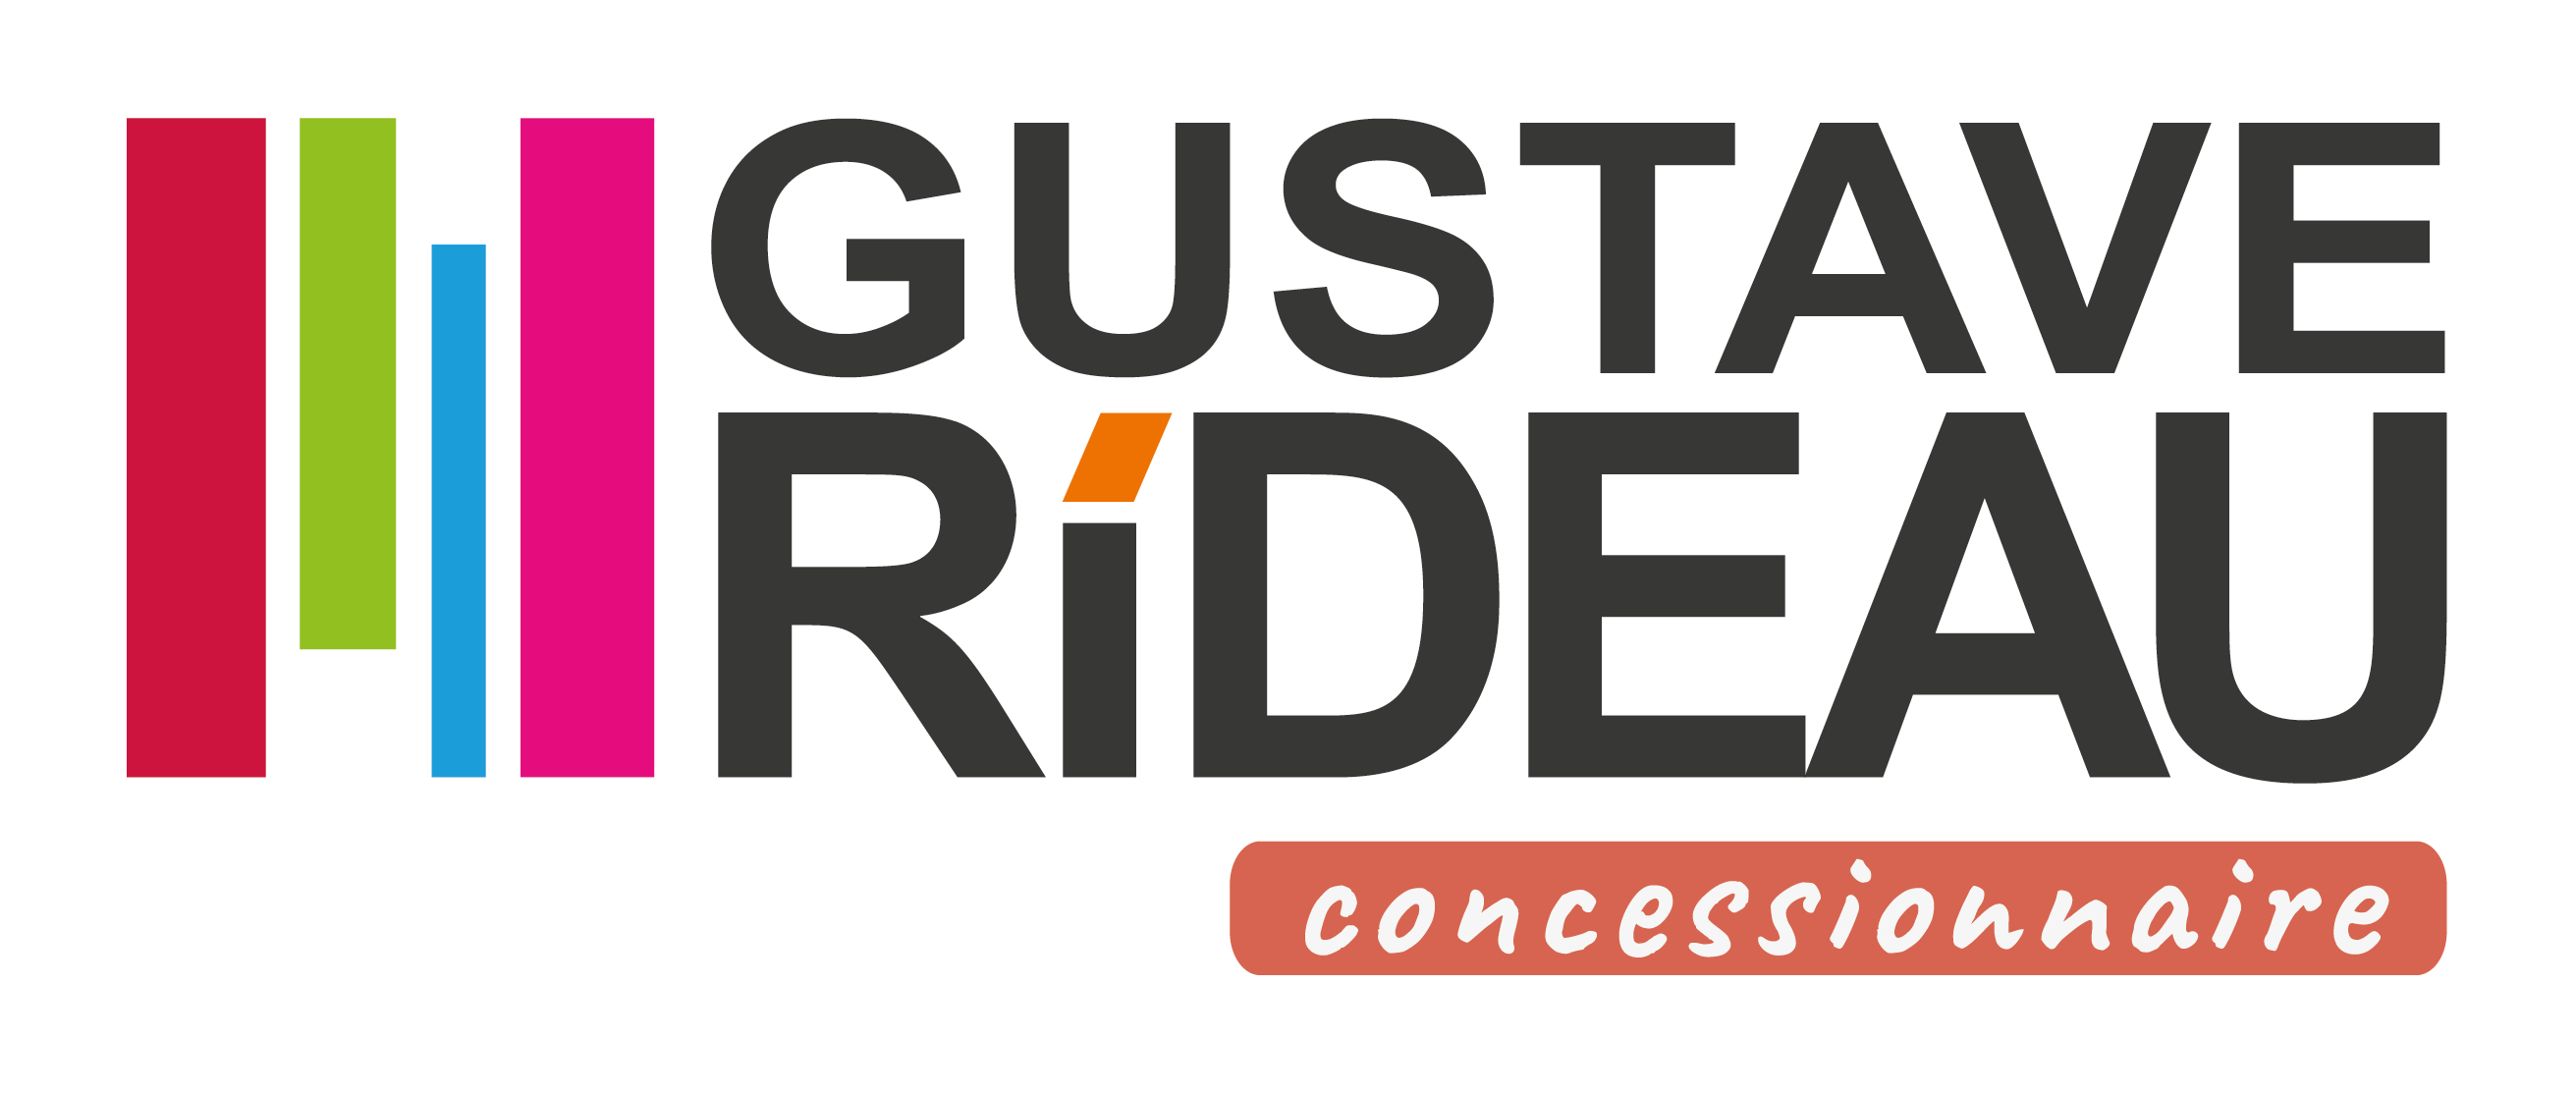 GUSTAVE RIDEAU_GRIS_CMJN_ CONCESSIONNAIRE_WEB